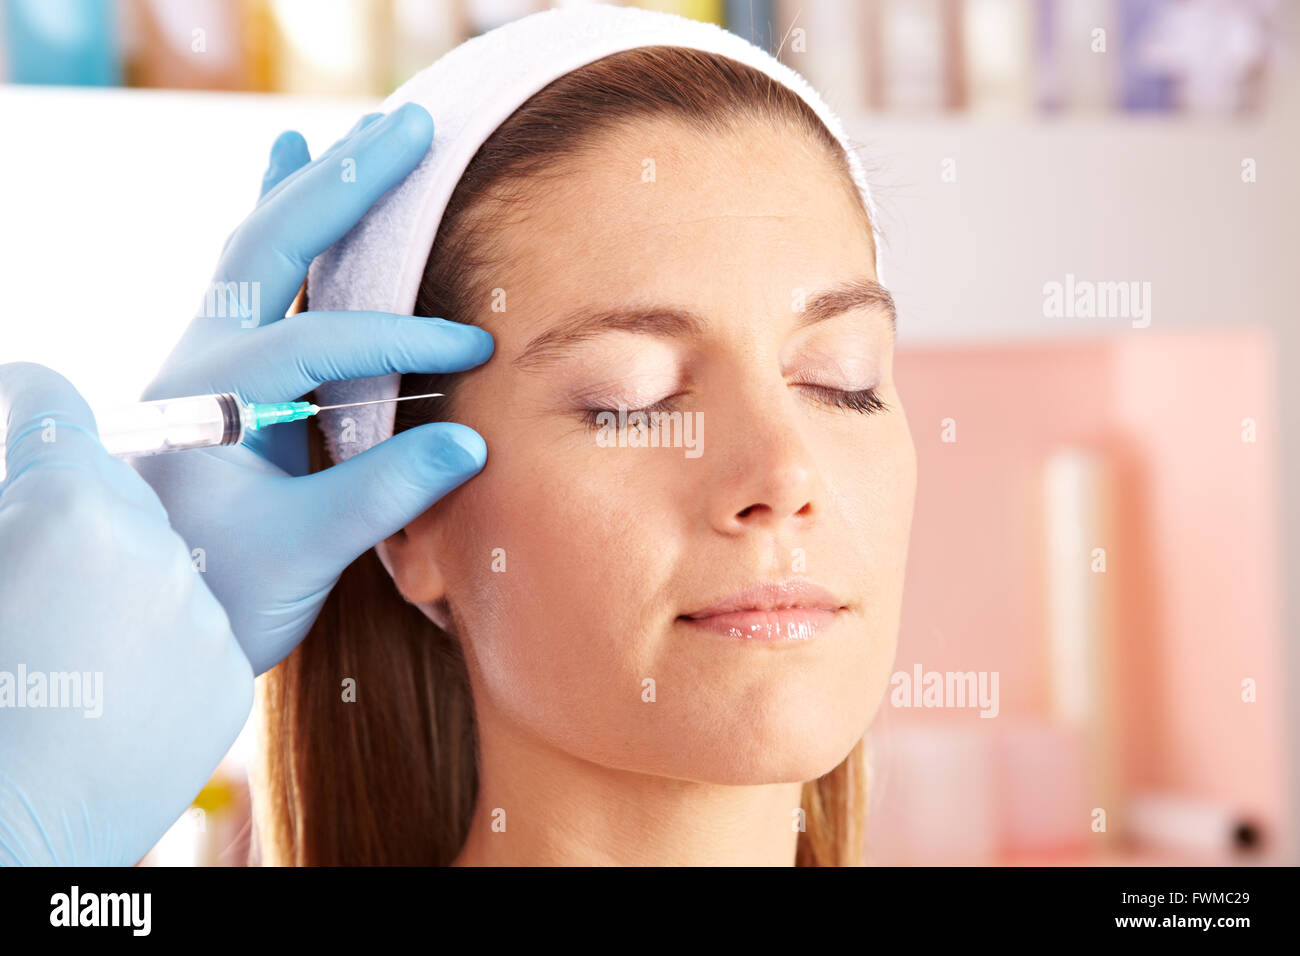 La donna in clinica di bellezza getting botox iniezione per rimuovere le rughe degli occhi Foto Stock